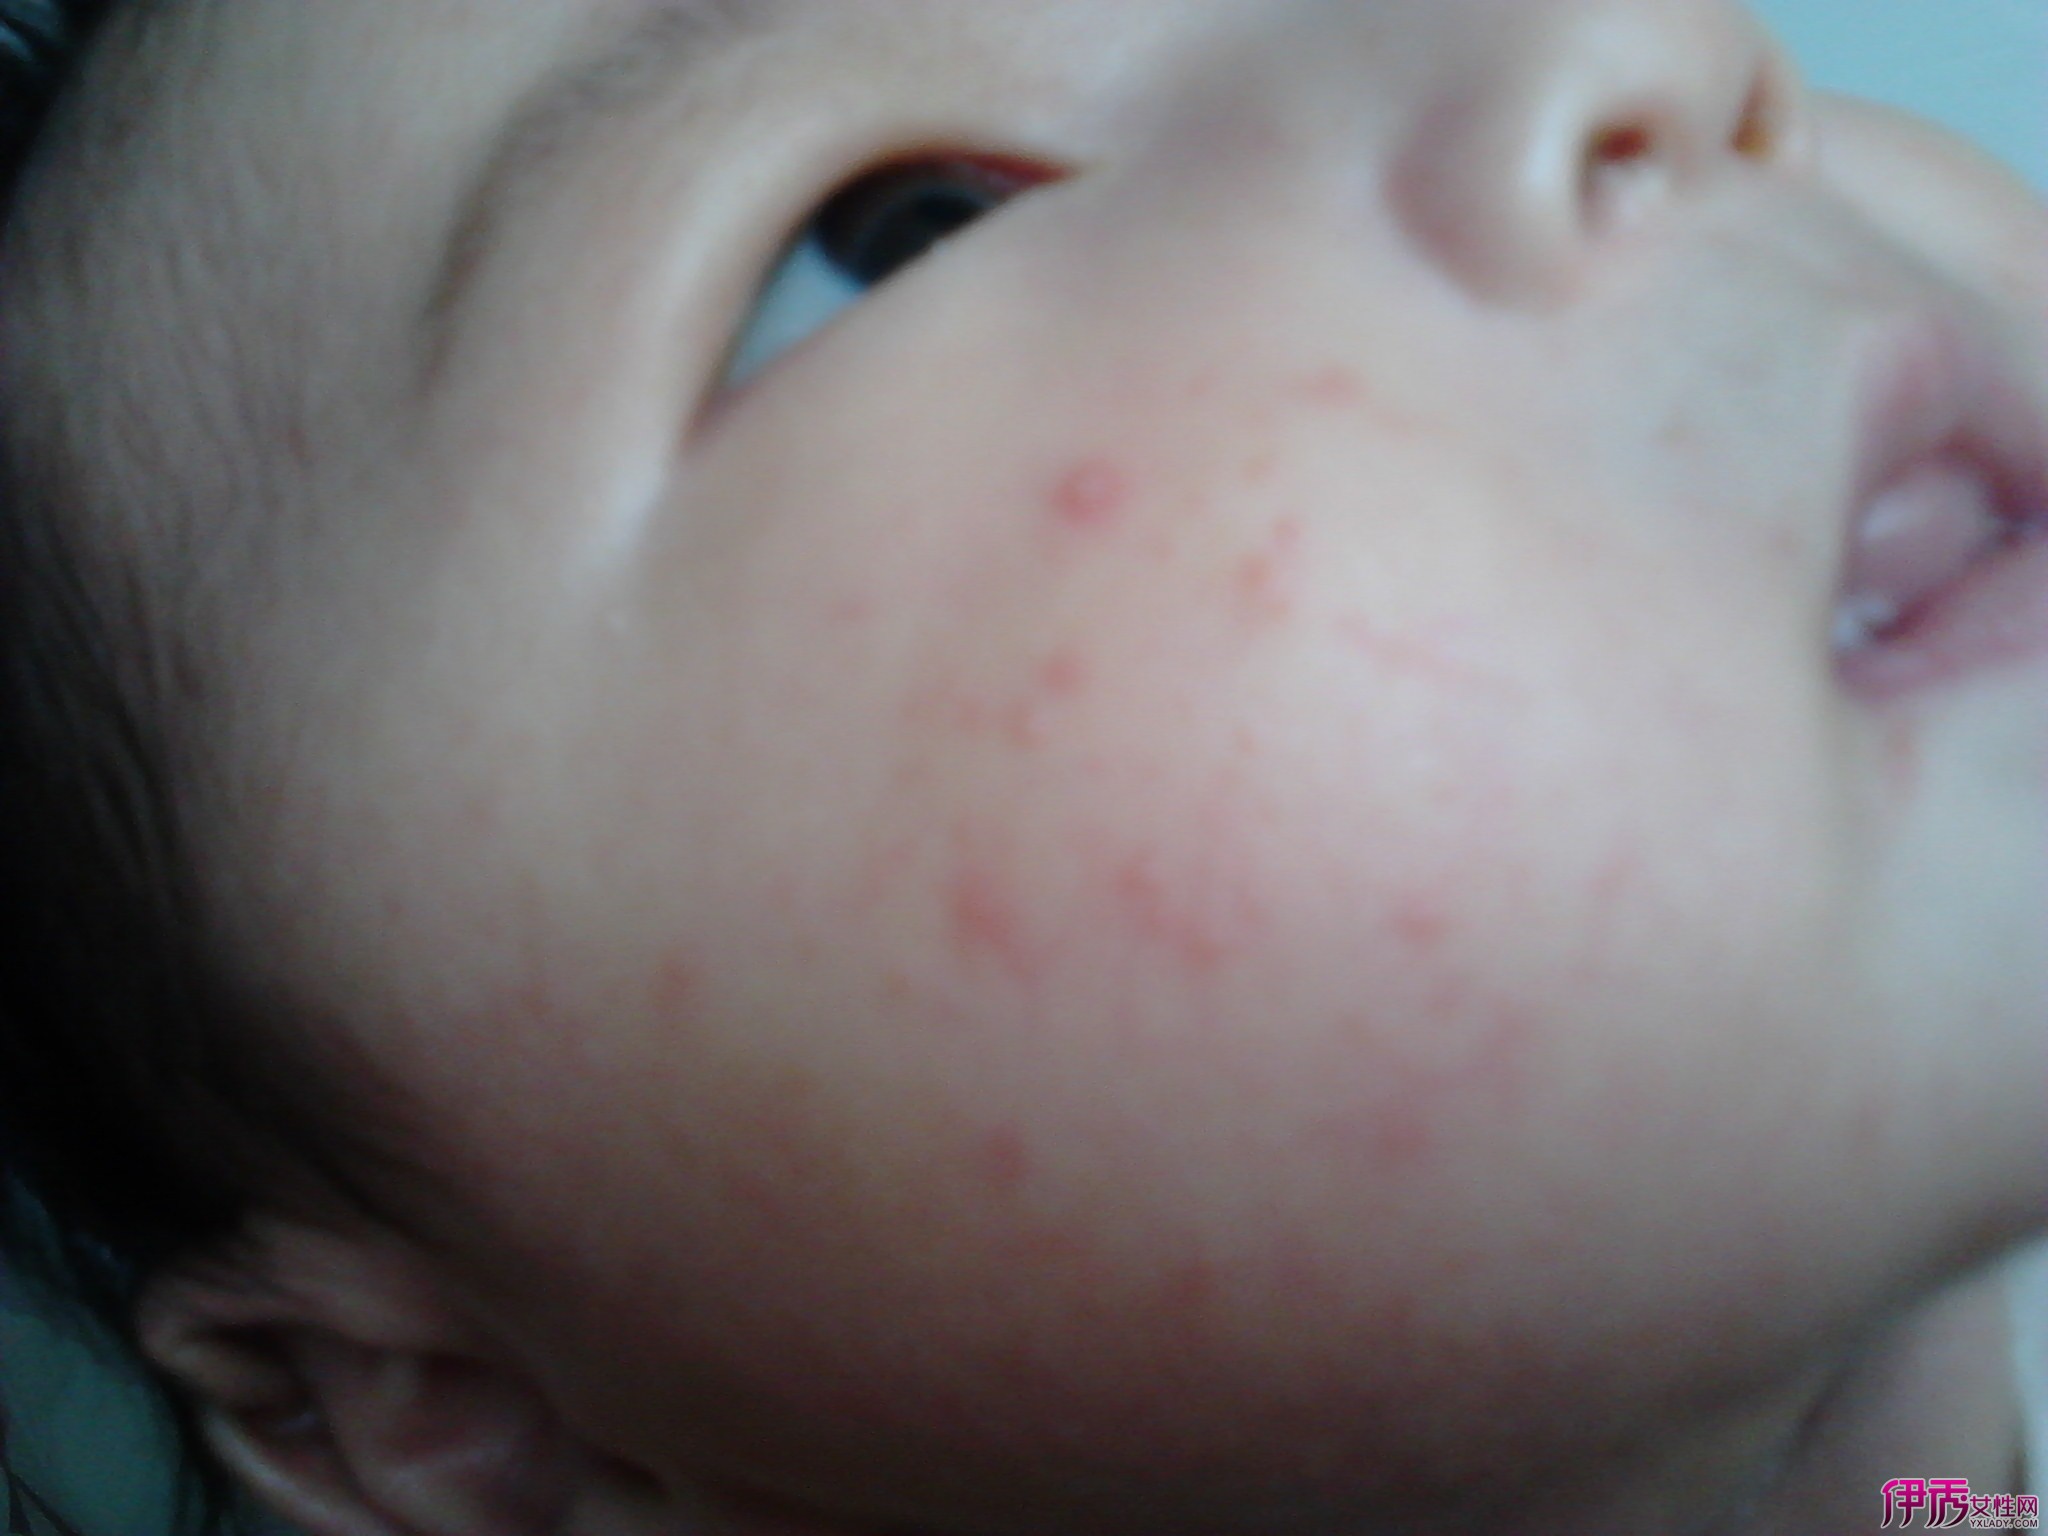 宝宝湿疹初期图片,宝宝湿疹图片初期 - 伤感说说吧